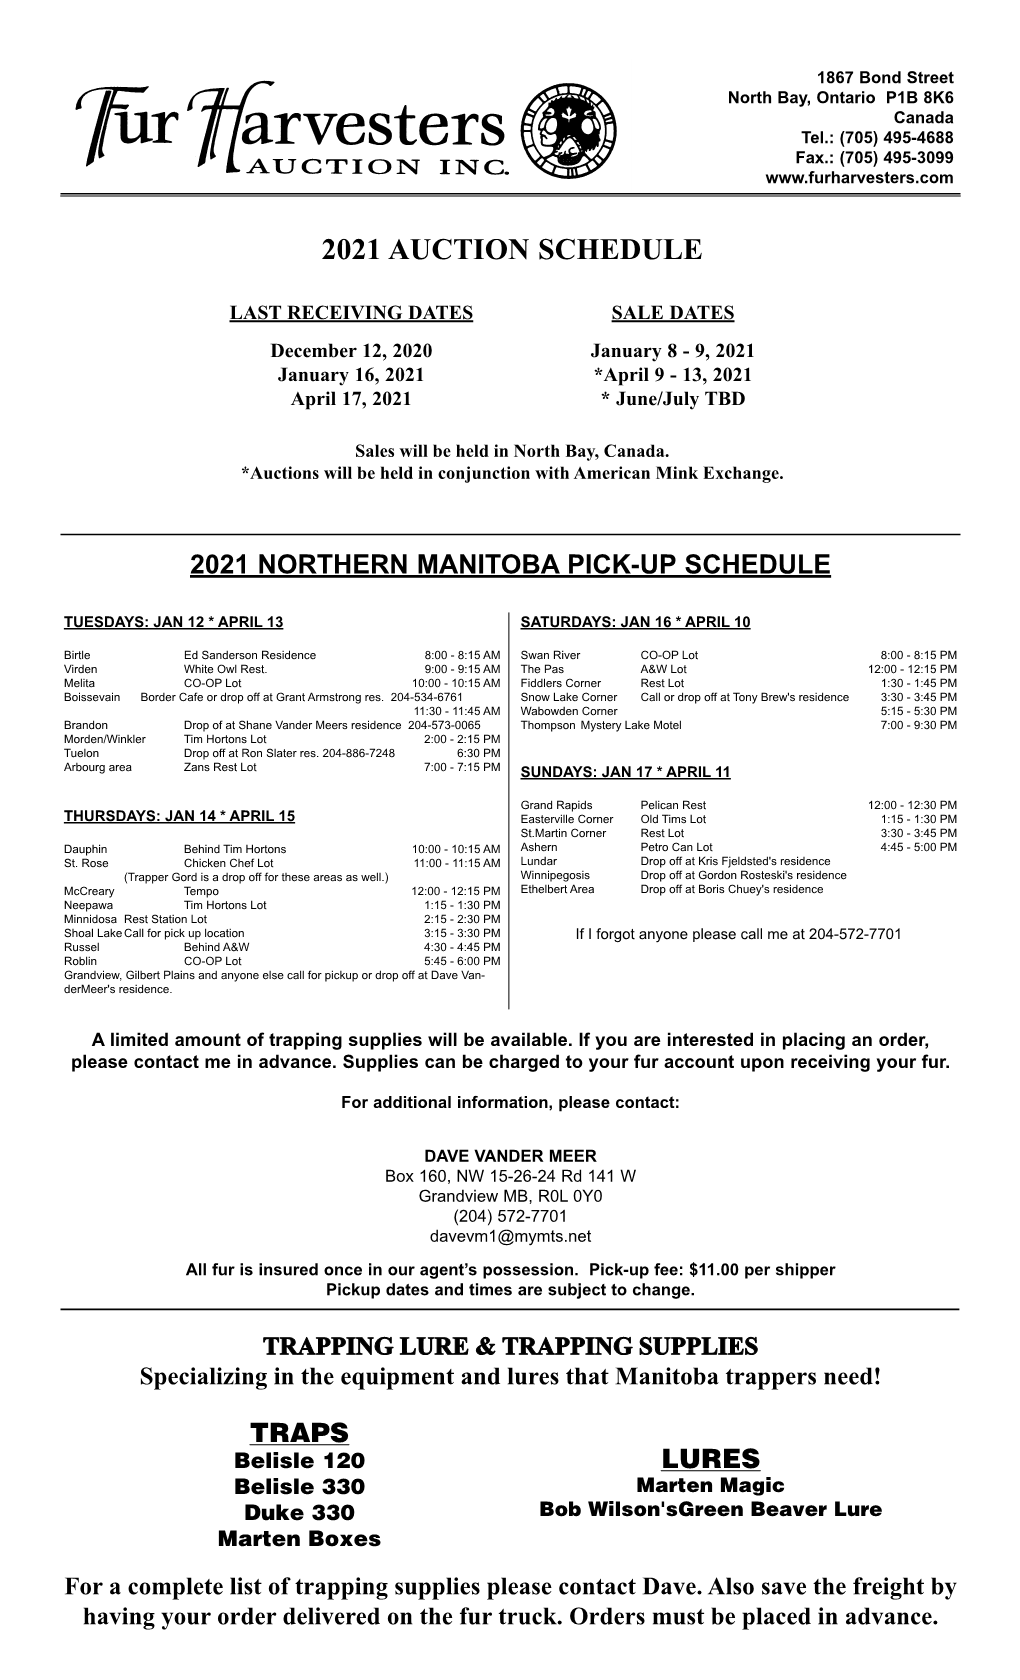 Manitoba Pick-Up Schedule